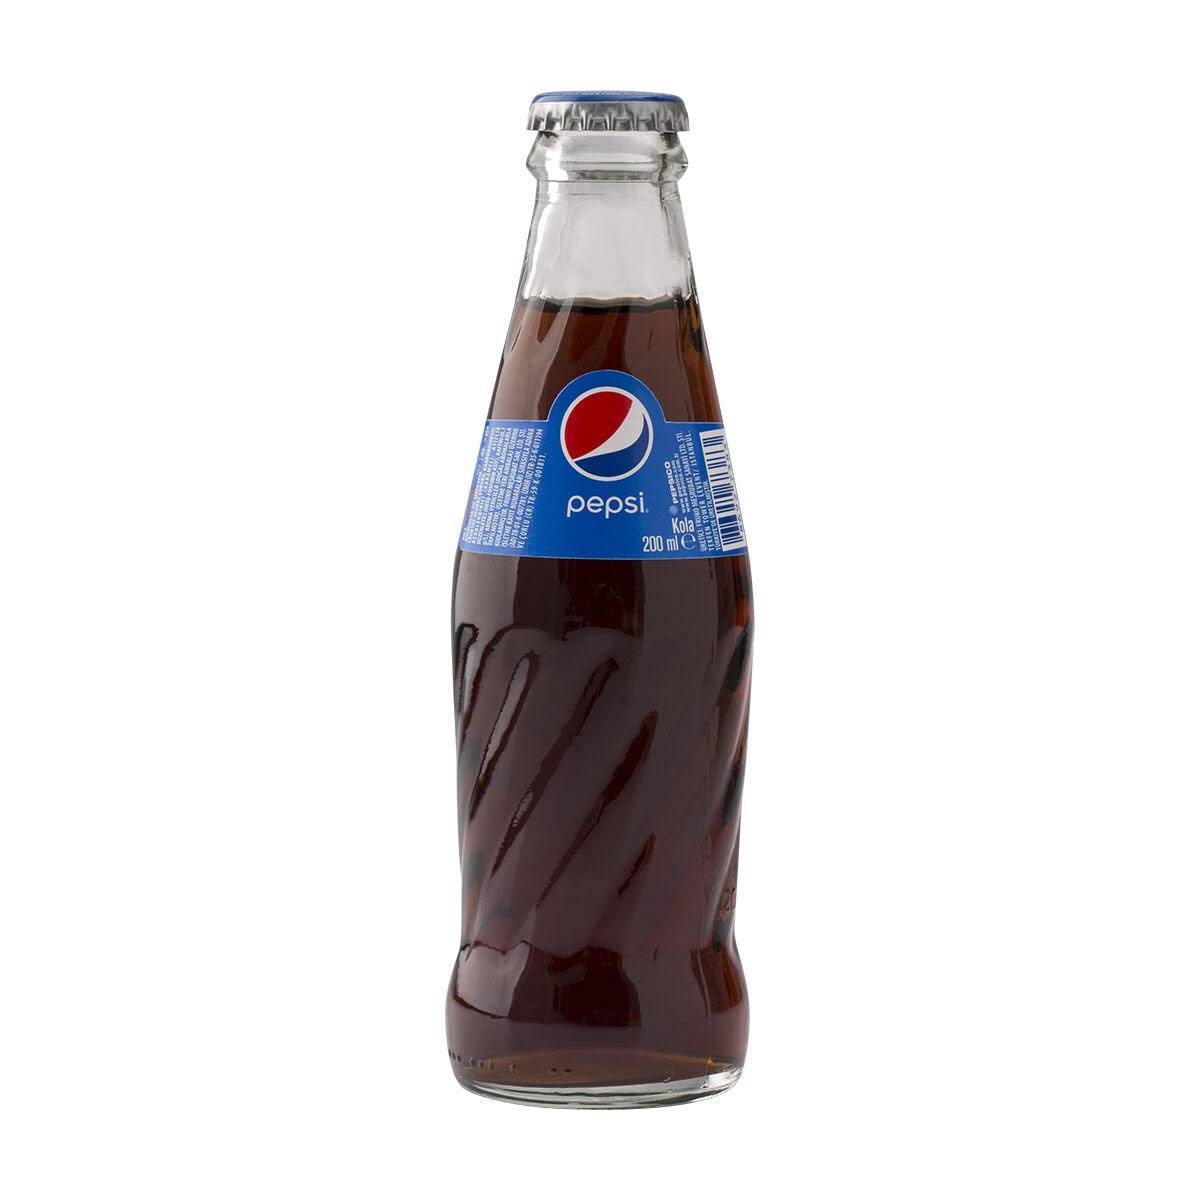 Kola 200 mililitrelik cam şişe ambalajlarda kolide 24 adet Pepsi marka kola gazlı içecek